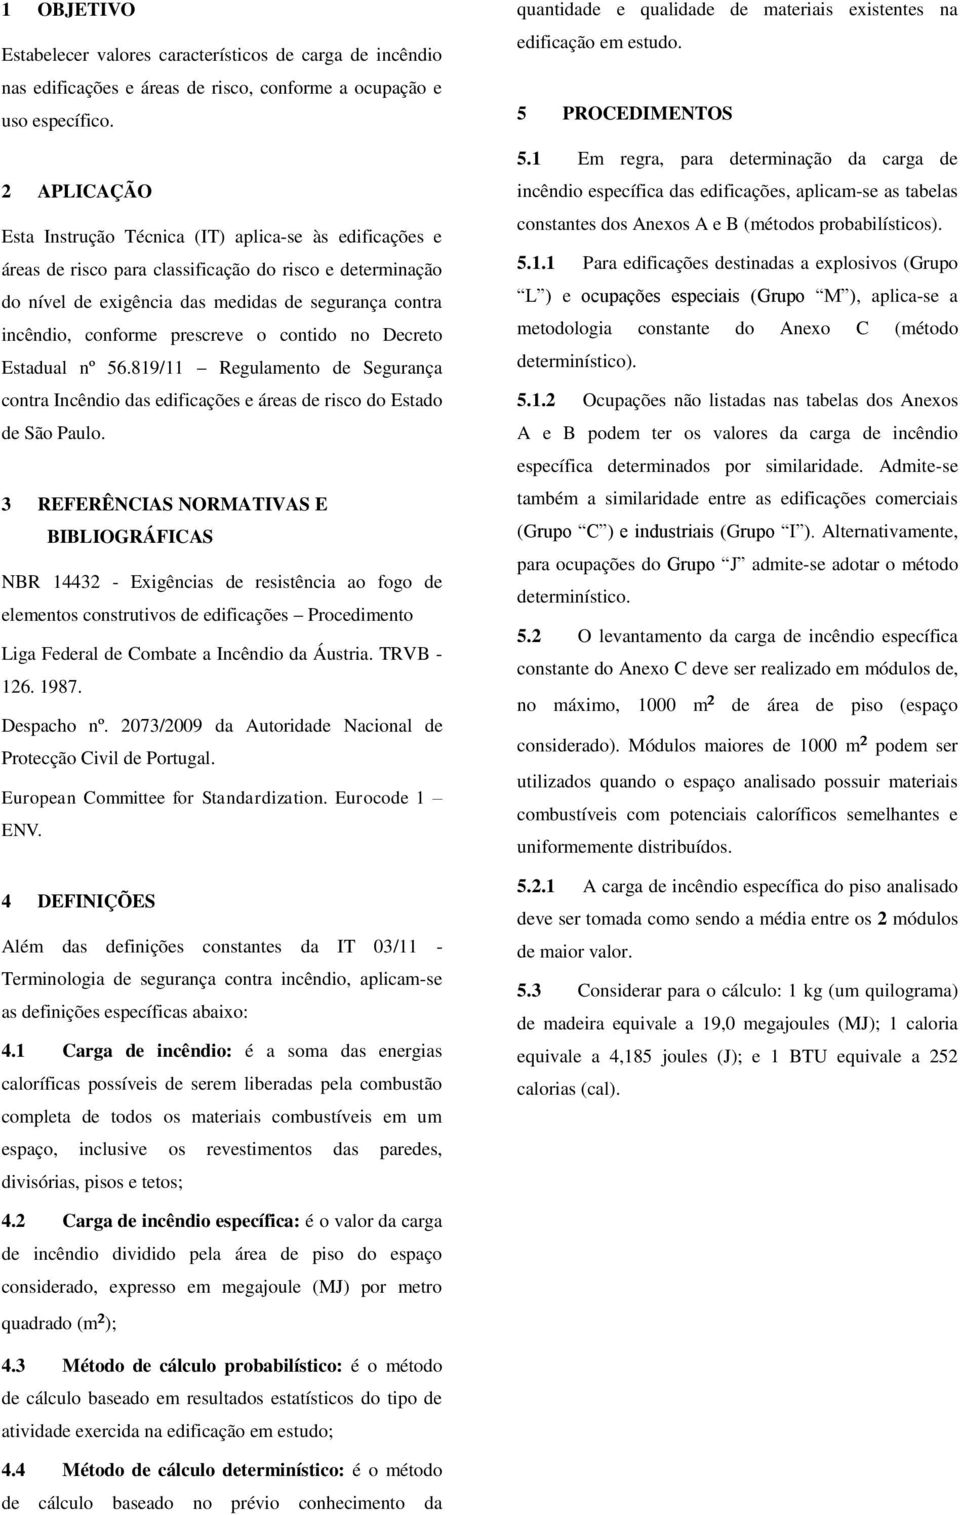 prescreve o contido no Decreto Estadual nº 56.819/11 Regulamento de Segurança contra Incêndio das edificações e áreas de risco do Estado de São Paulo.